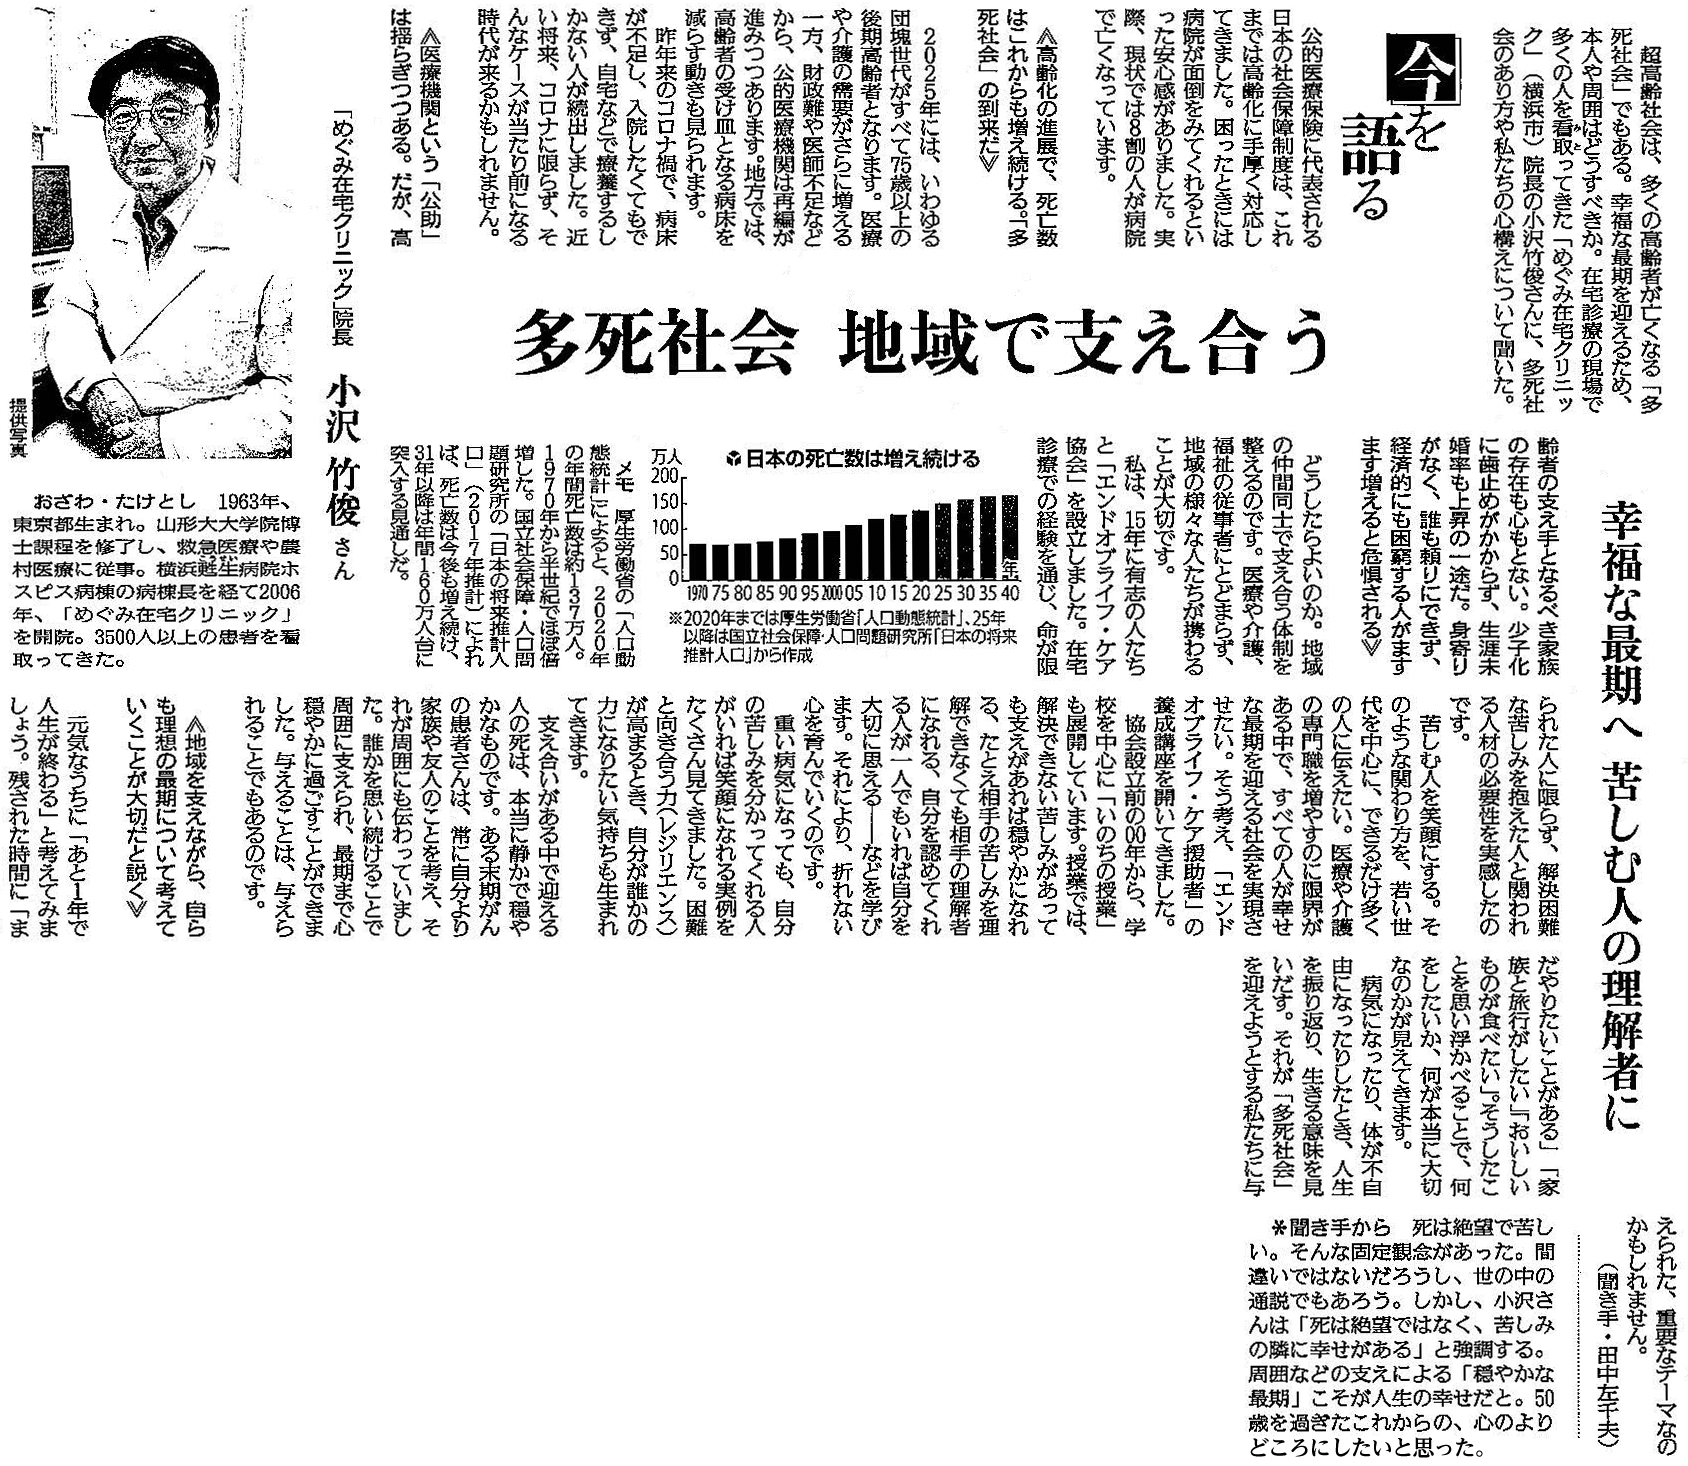 読売新聞 2021年9月28日 掲載記事